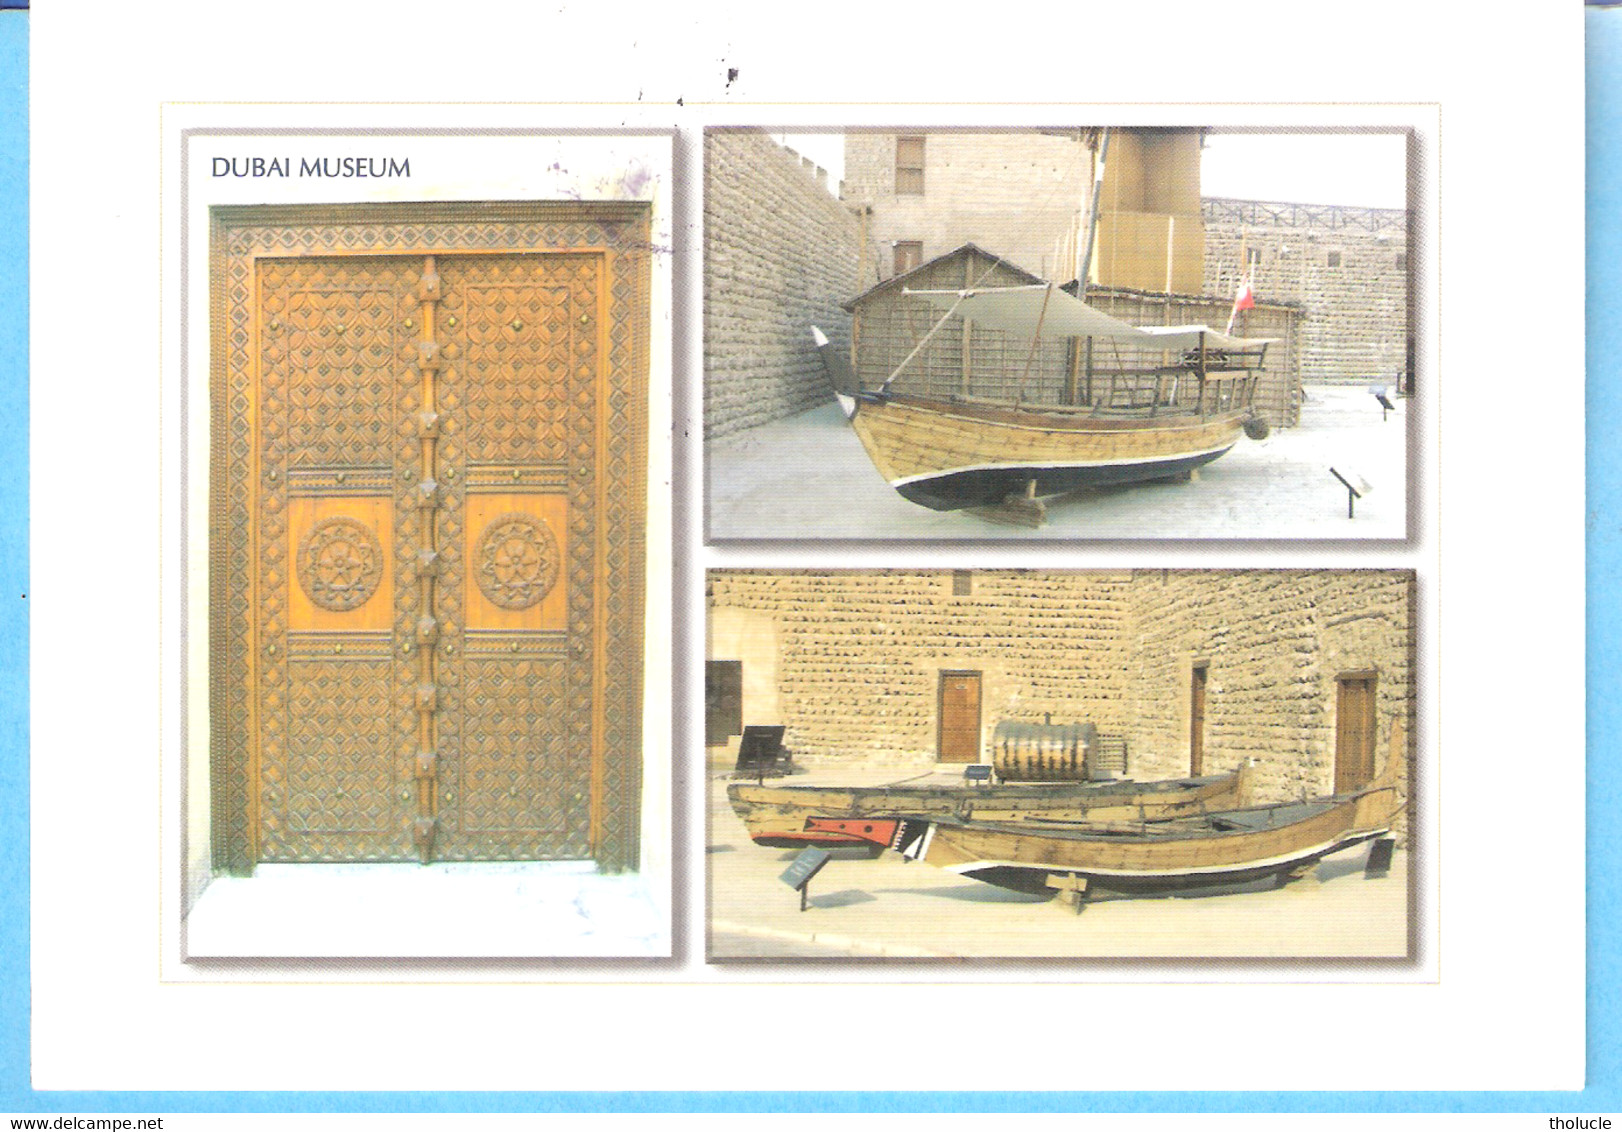 Dubai Museum-Fishing Boats In The Museum Of Dubai-Carlton Cards-Gulf - Dubai